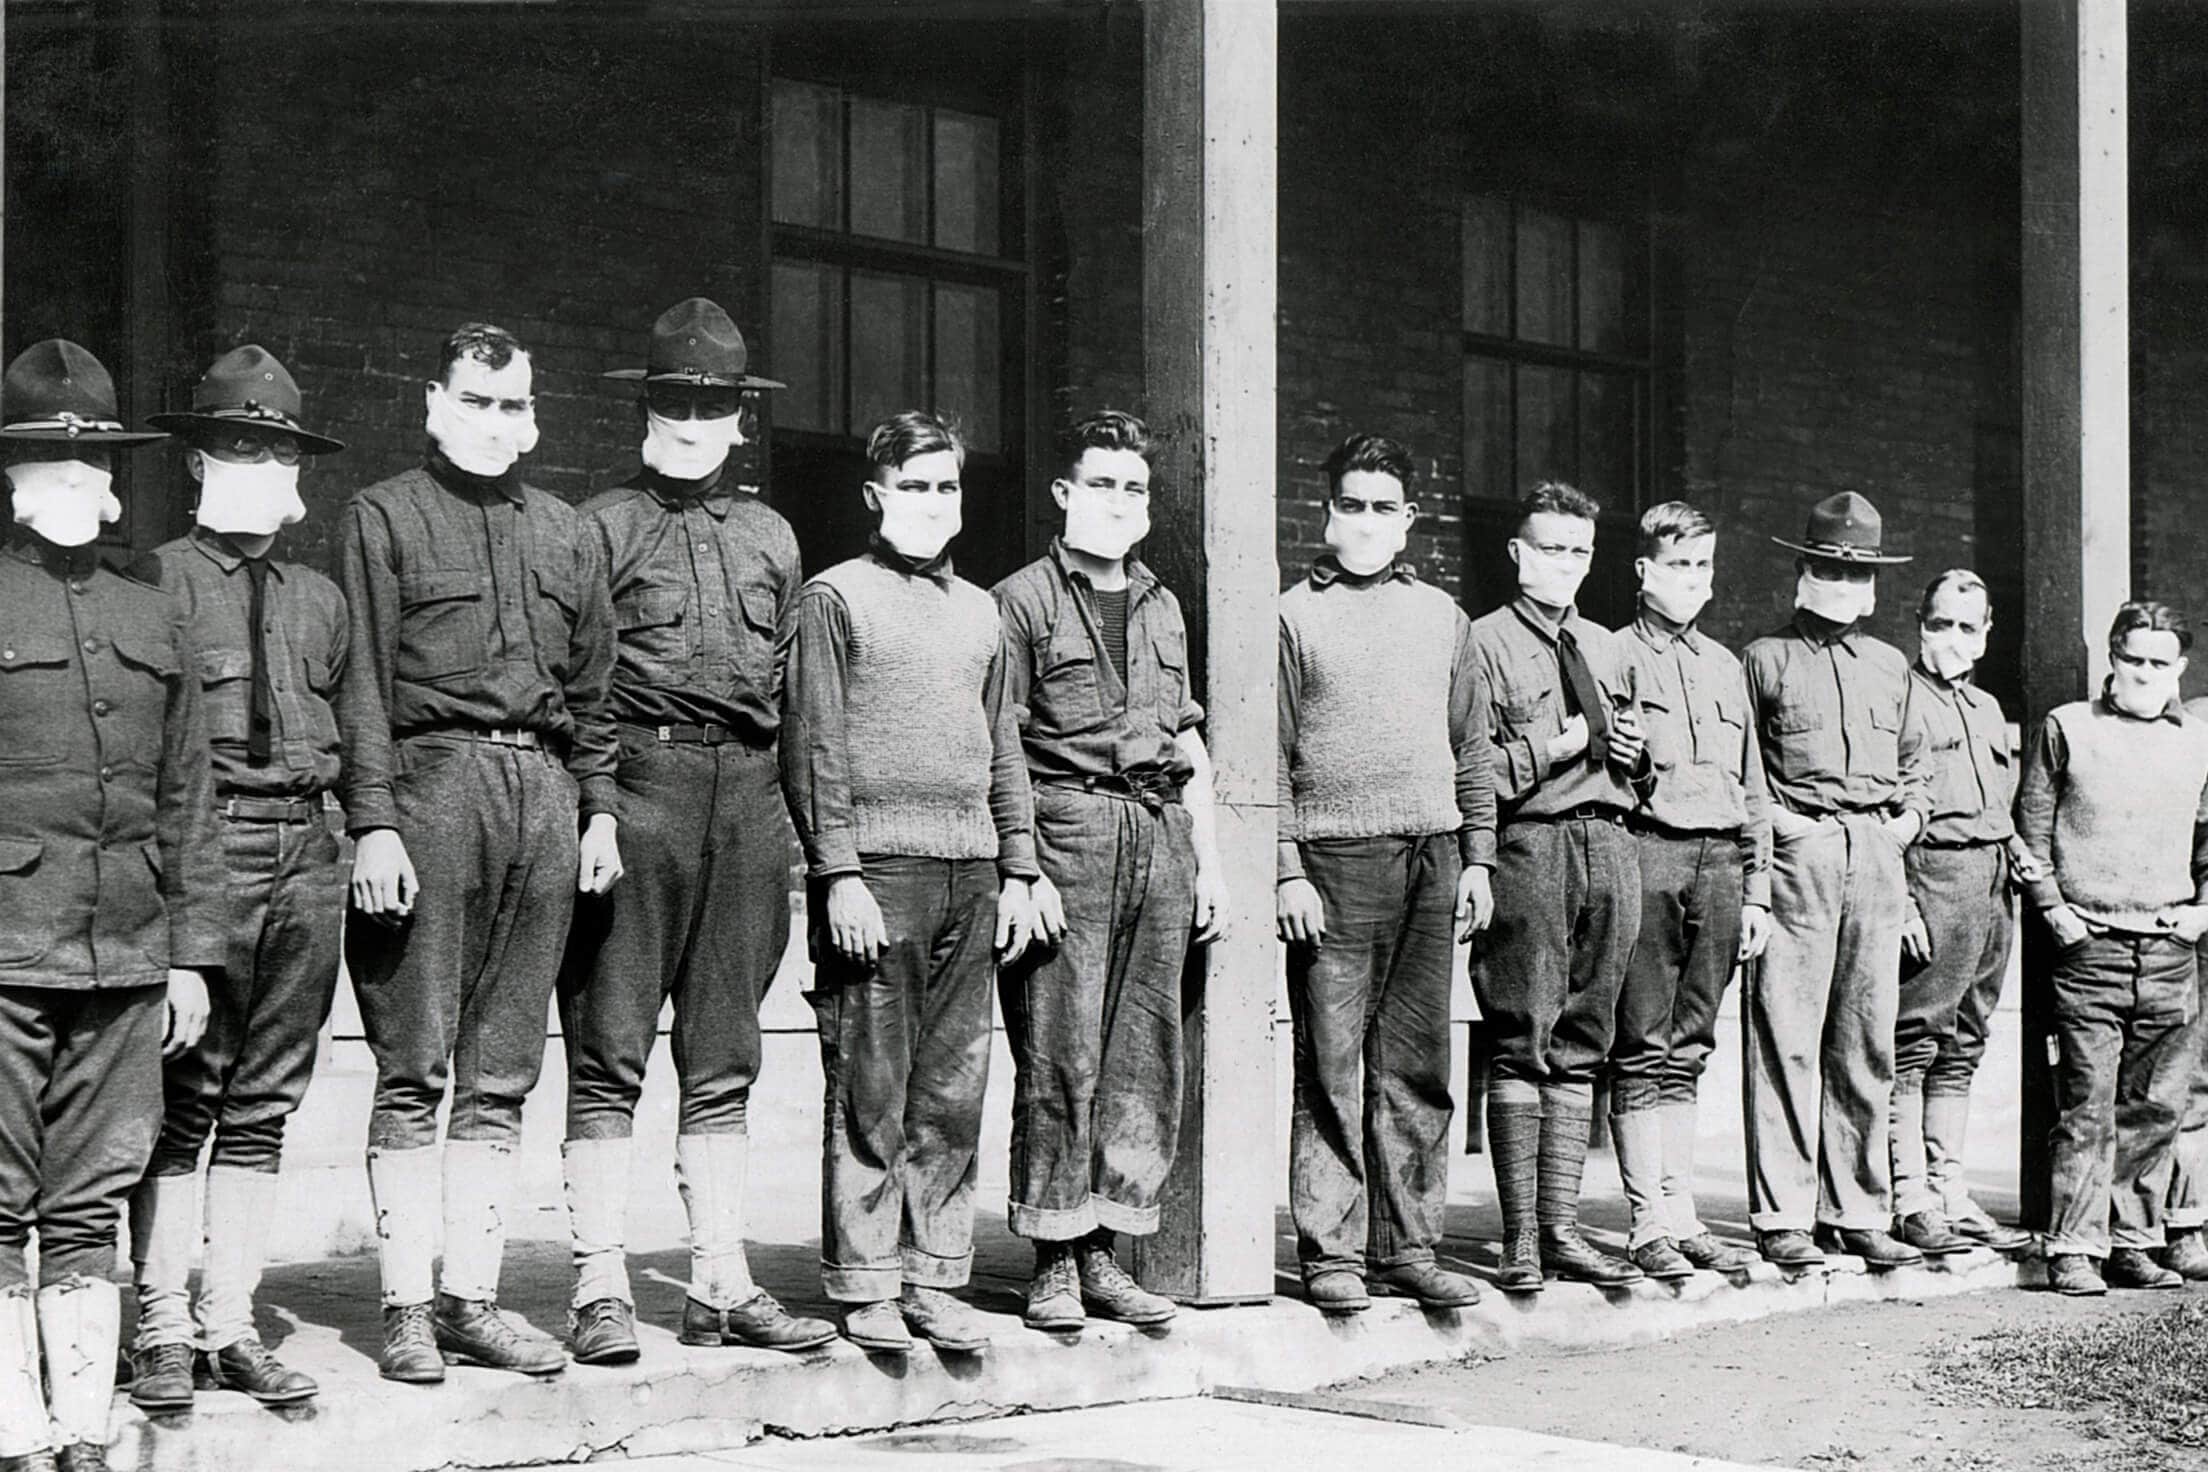 Militares en fila, con mascarillas puestas, en un hospital durante la pandemia de la gripe de 1918 y 1919